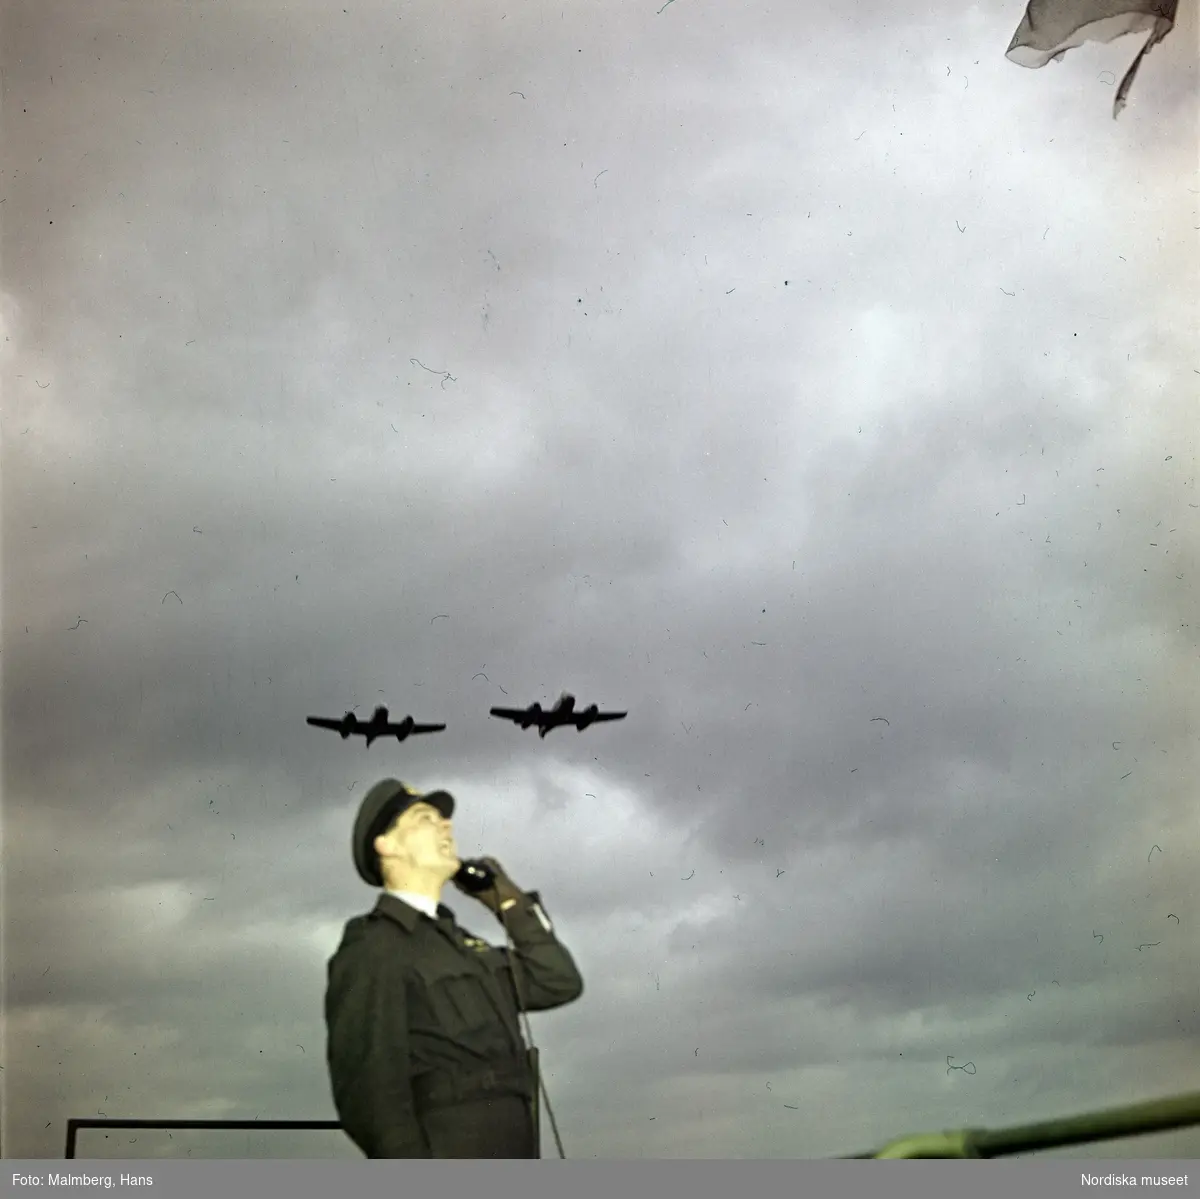 Brittiska flygvapnet, Royal Air Force (RAF). En flygvapenofficer talar i telefon under mörka skyar. Ovanför honom flyger jaktplan av typen Gloster Meteor F.4. Troligen flygbasen Duxford i Cambridgeshire, England.